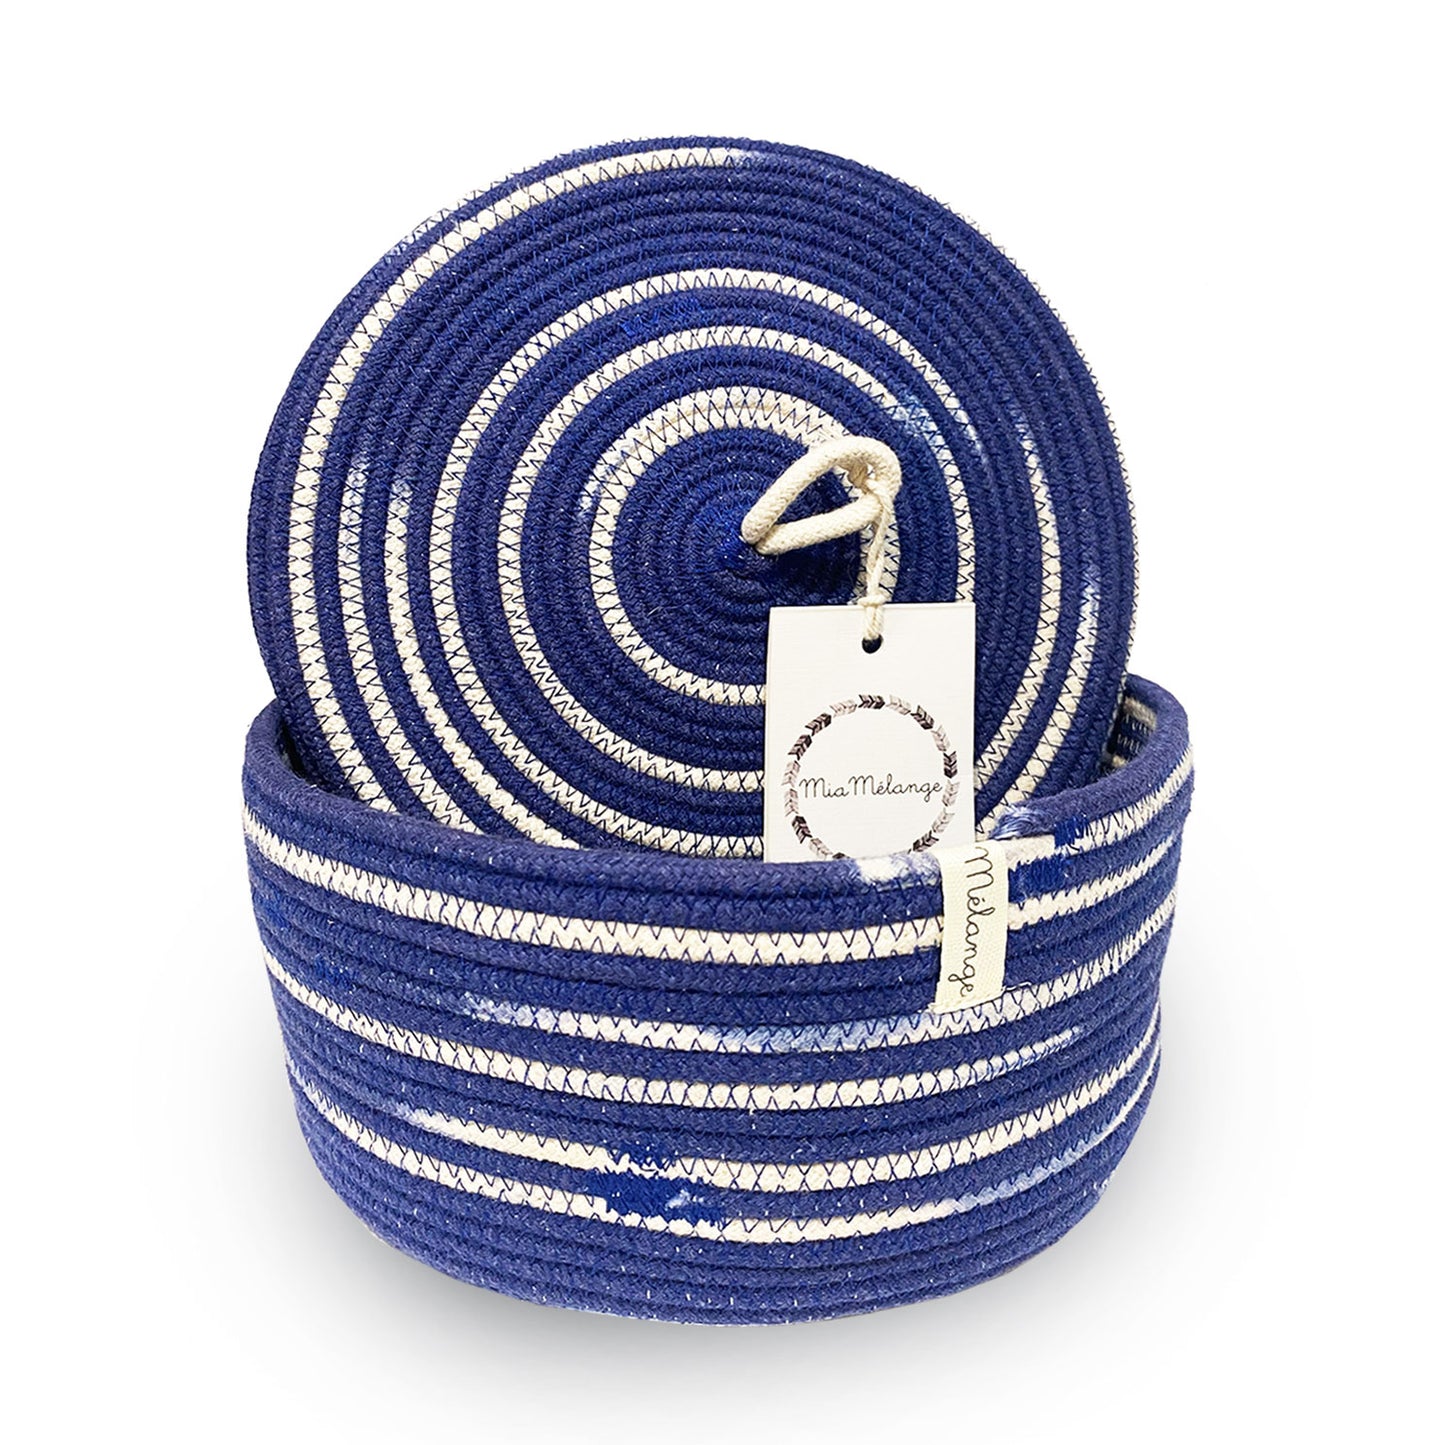 Ciotola in corda con coperchio blu realizzata a mano